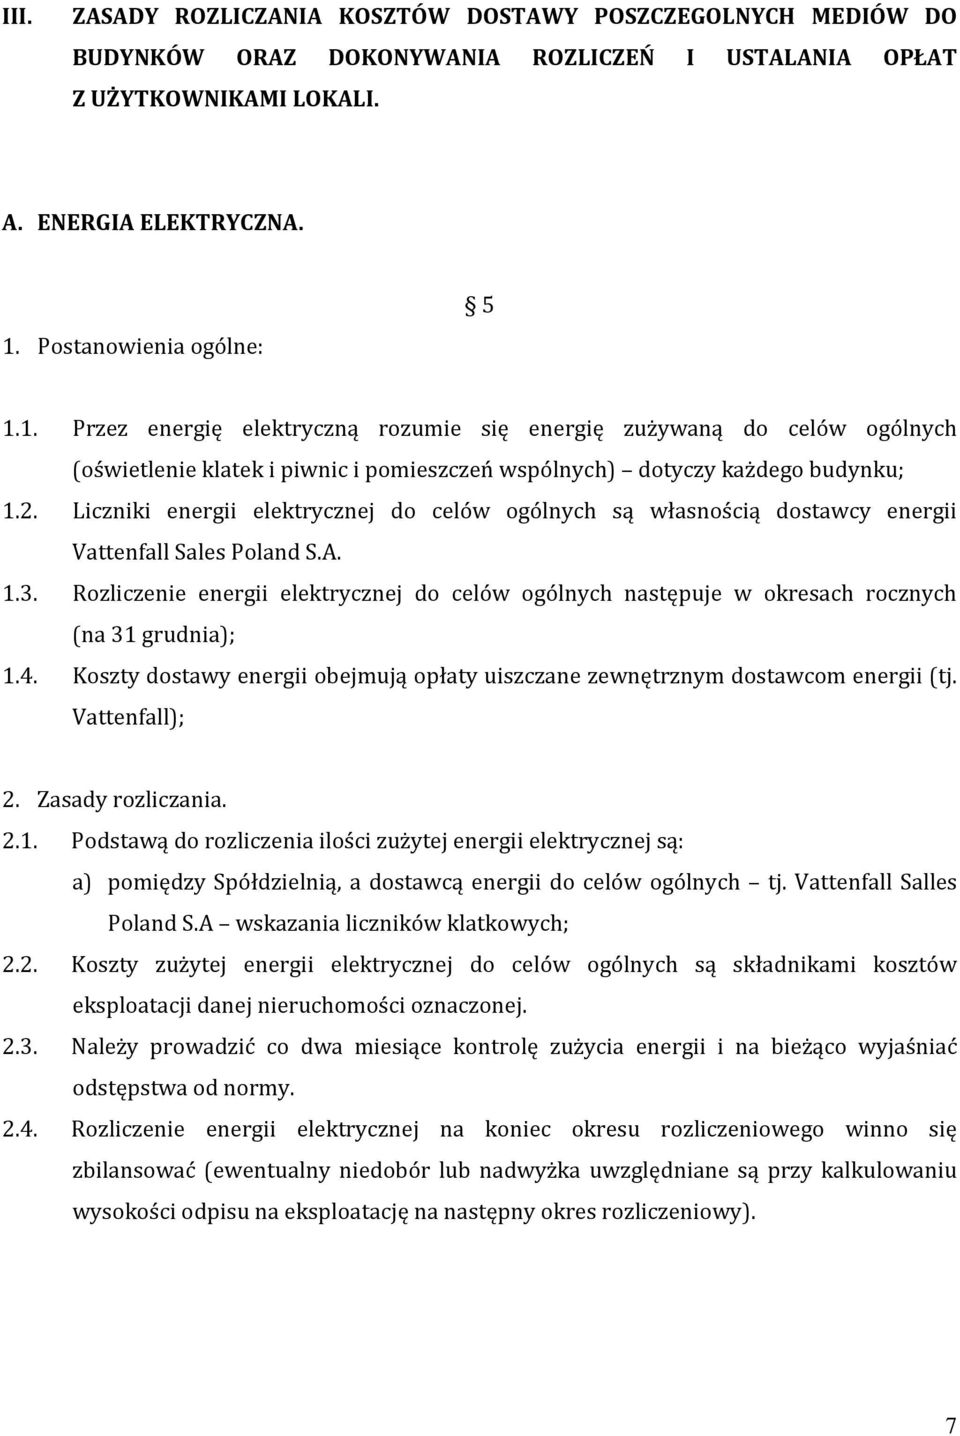 Liczniki energii elektrycznej do celów ogólnych są własnością dostawcy energii Vattenfall Sales Poland S.A. 1.3.